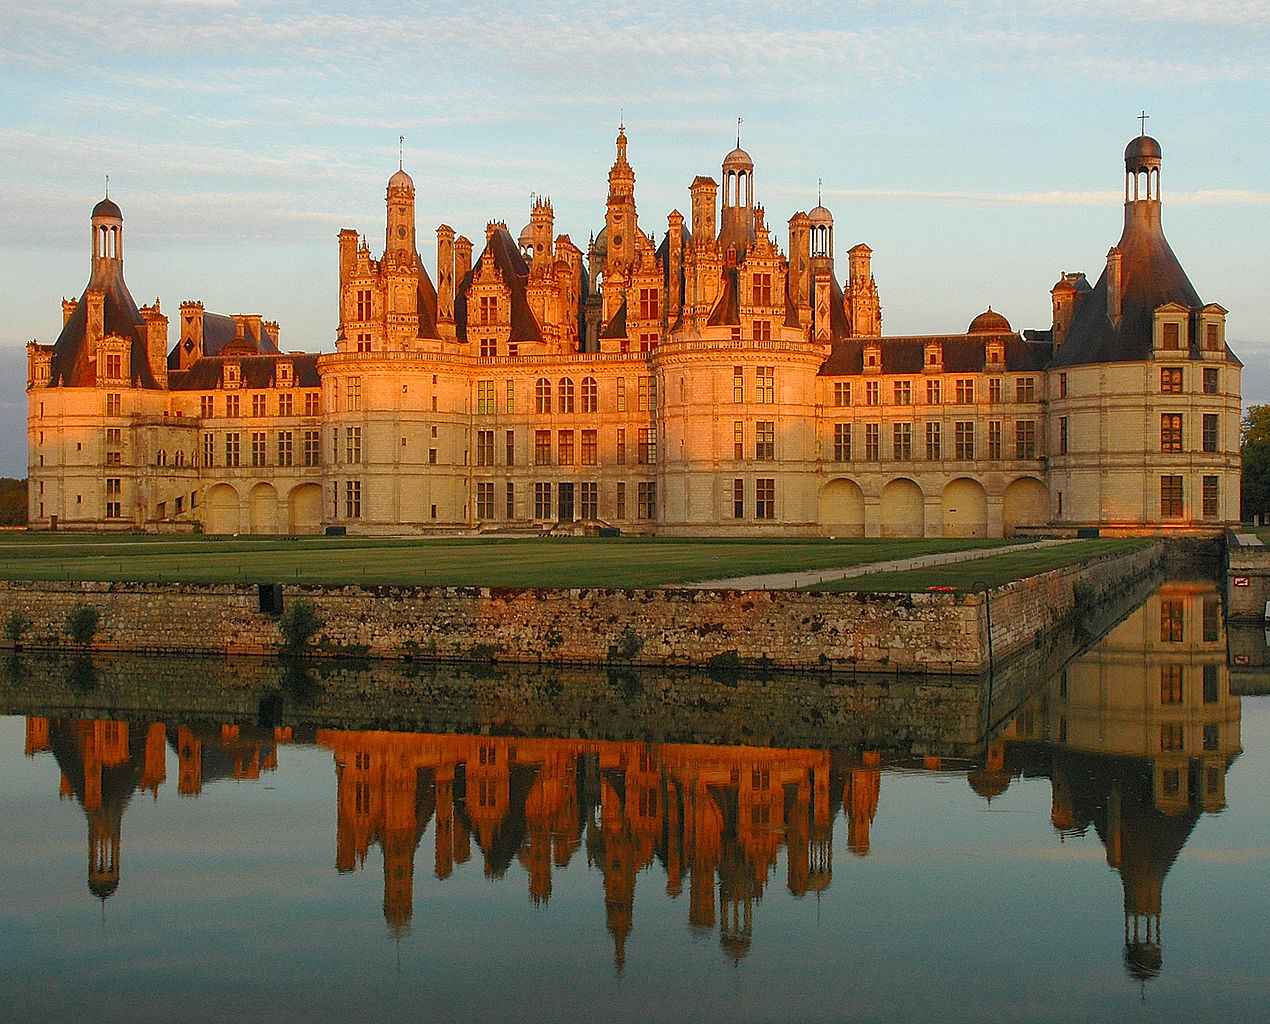 Maquette château de Chambord